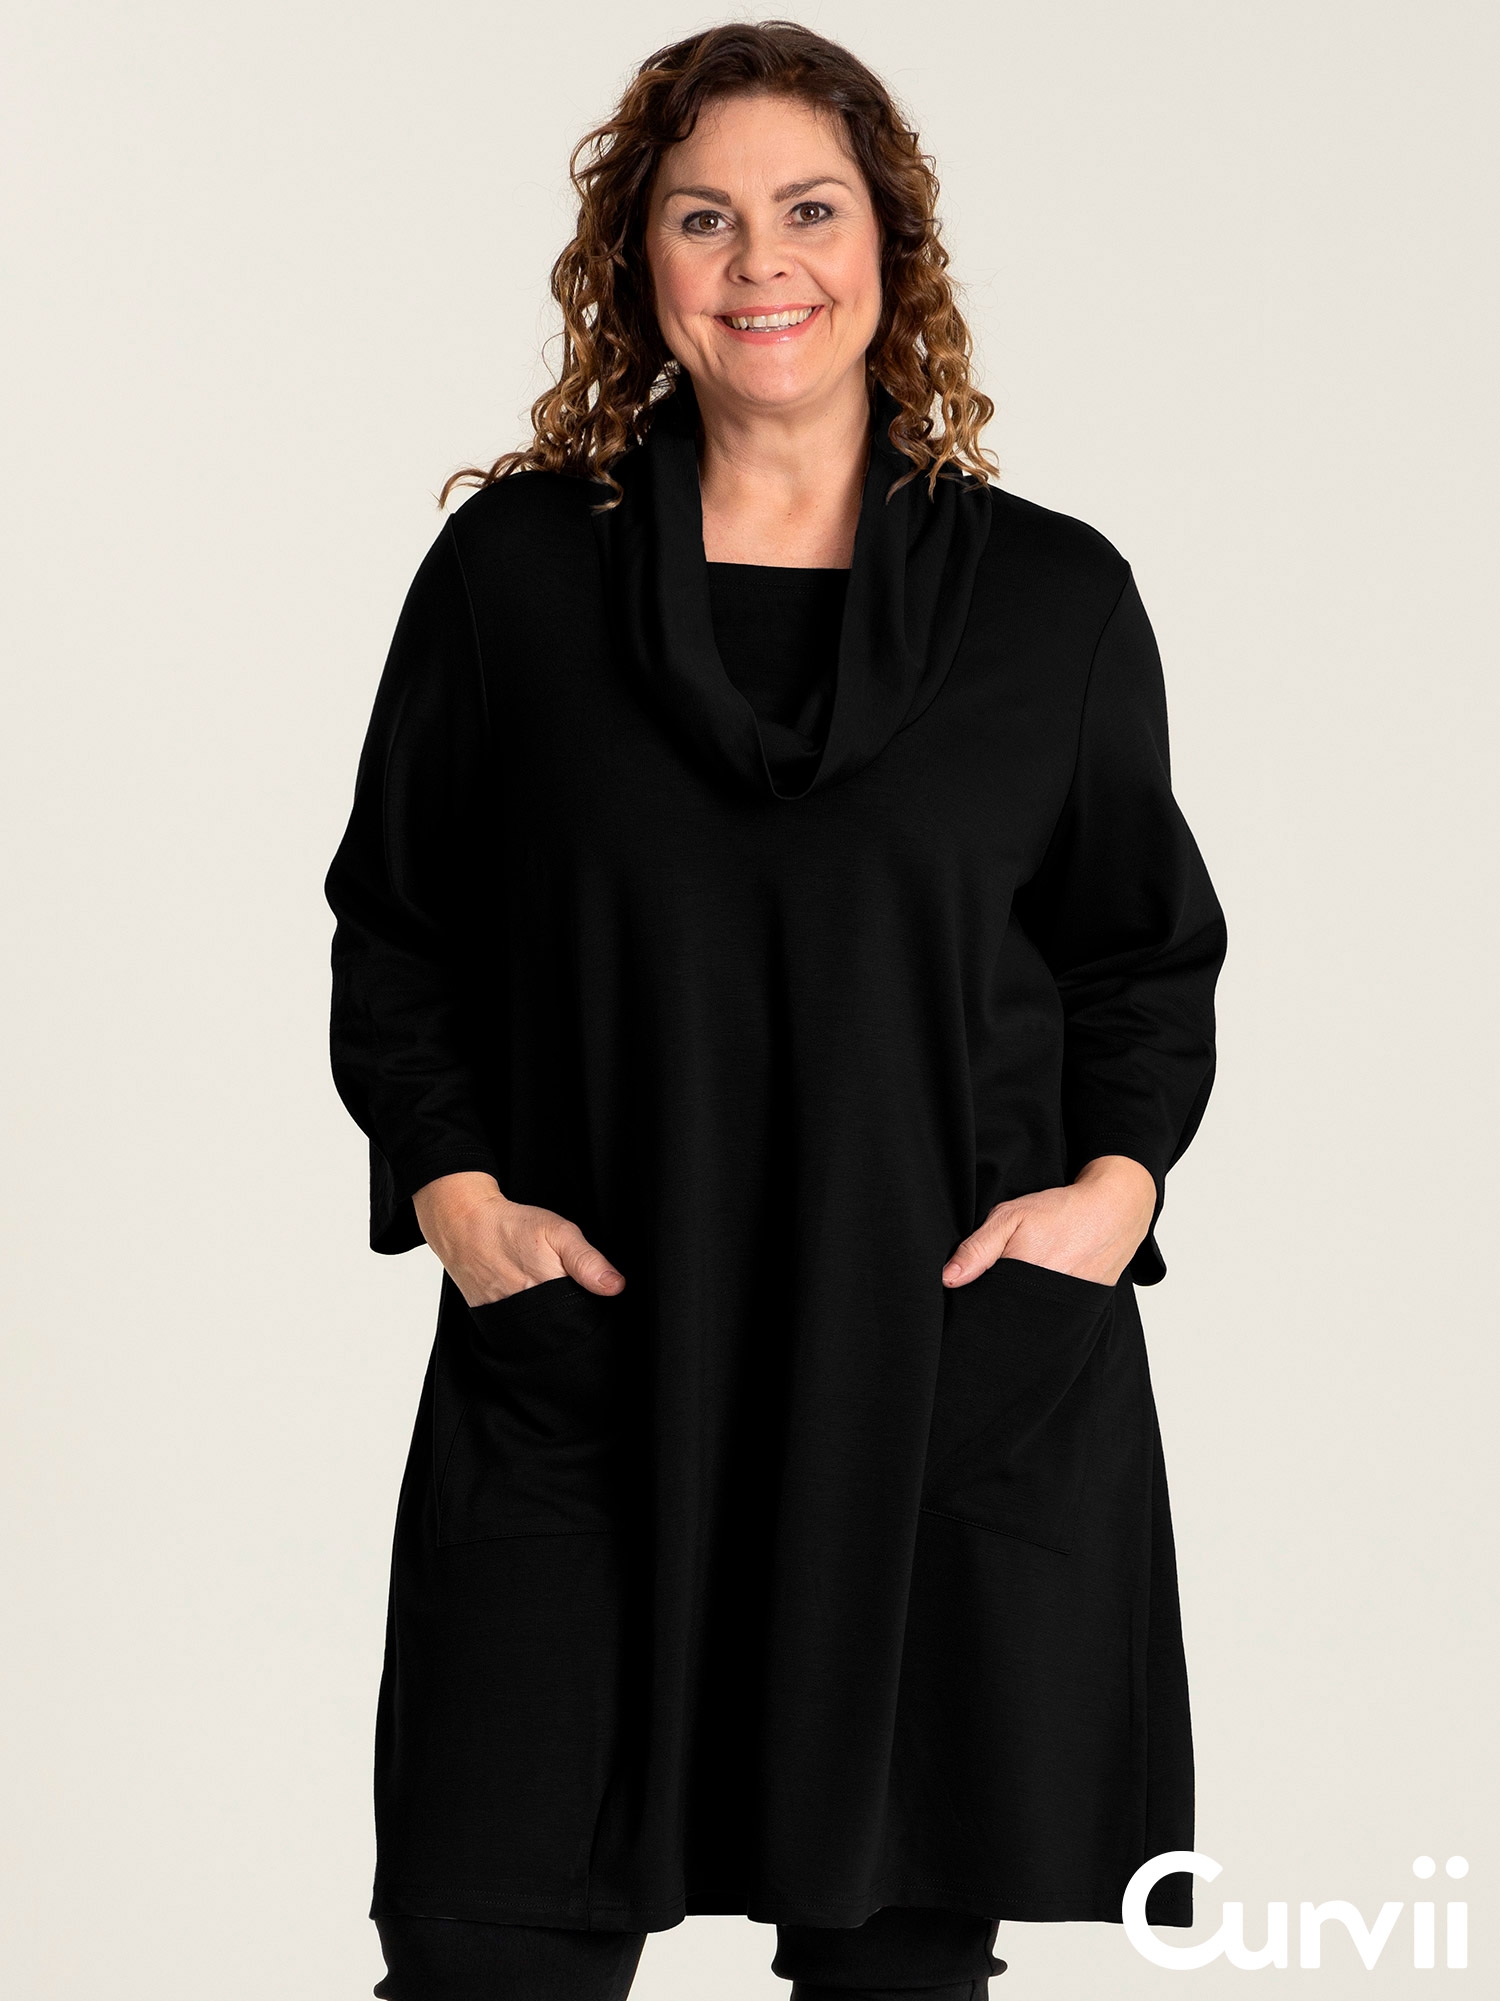 NIKOLINE - svart tunika med lommer fra Gozzip